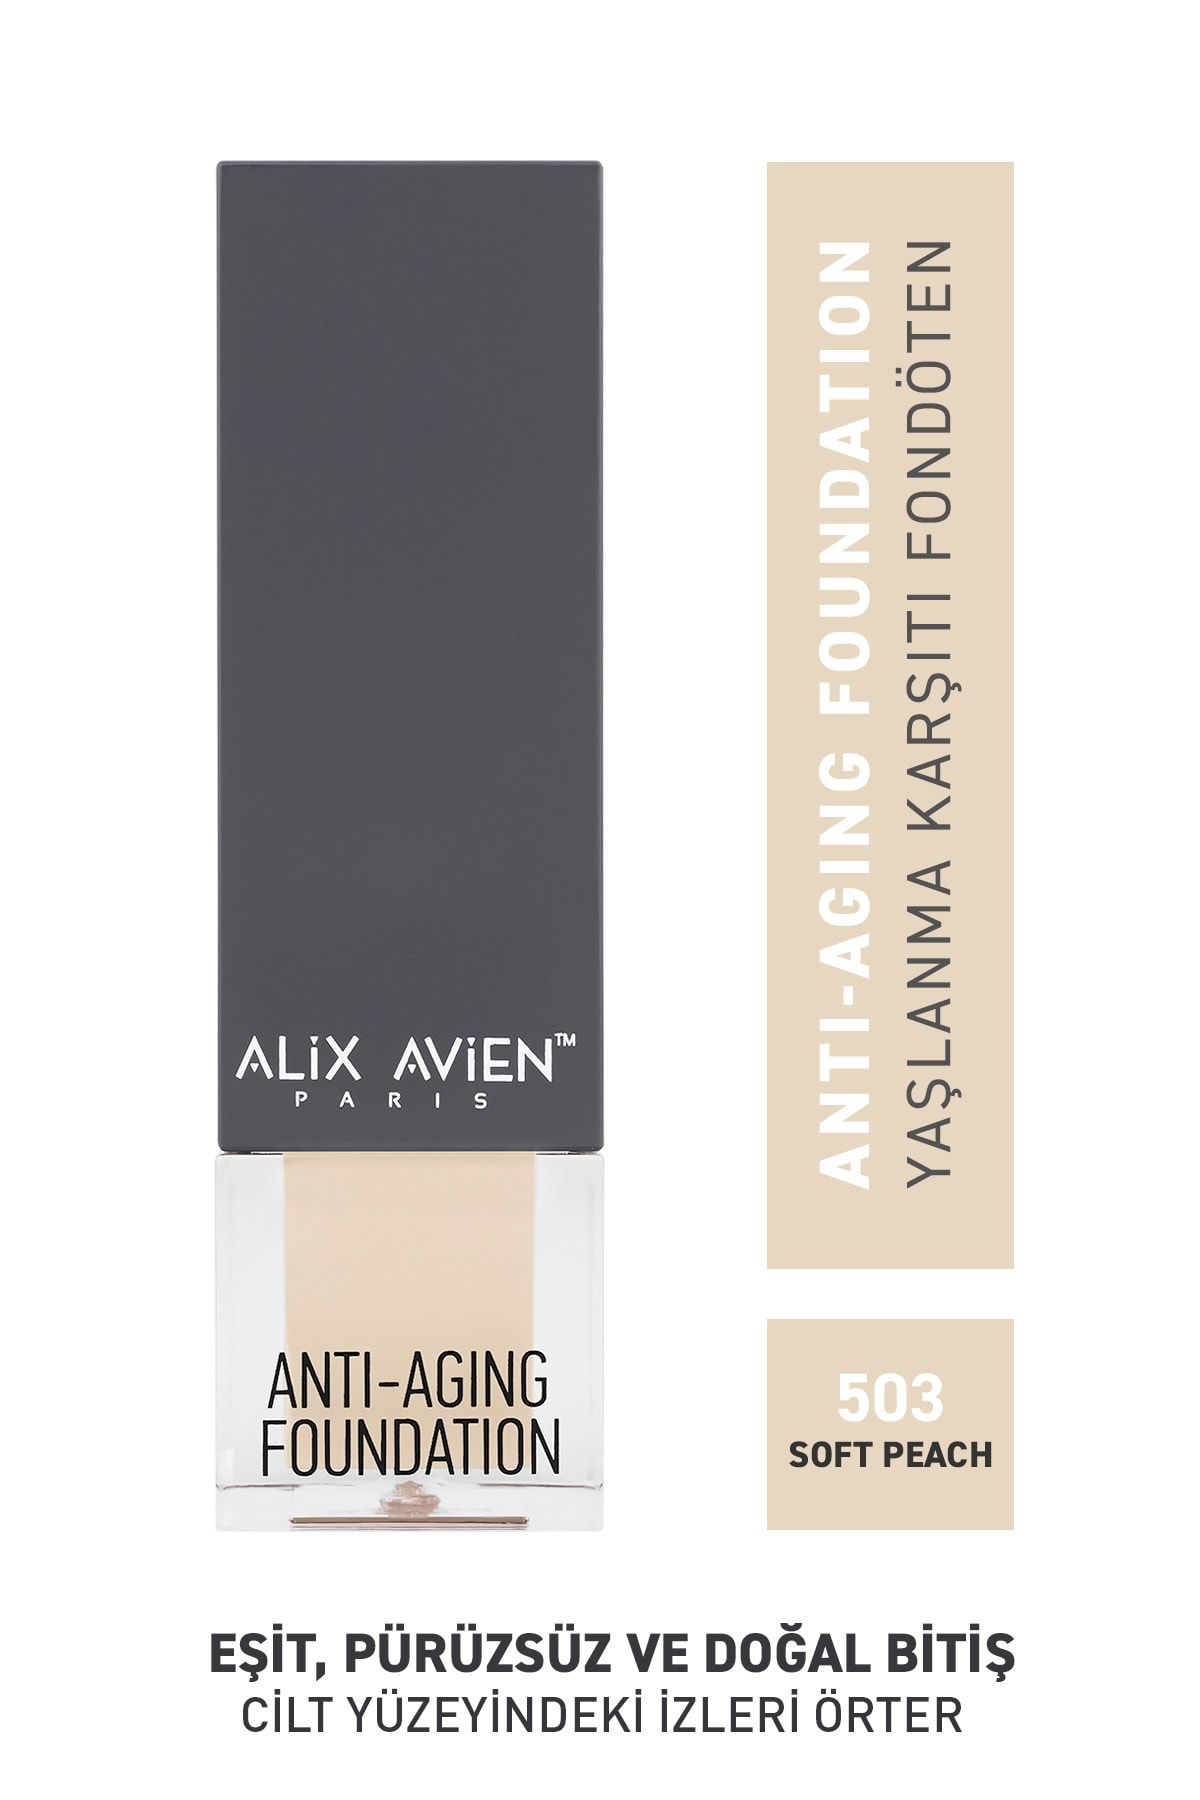 Alix Avien Yaşlanma Karşıtı Fondöten 503 Soft Peach Spf 15 Anti Aging Foundation - 35 ml